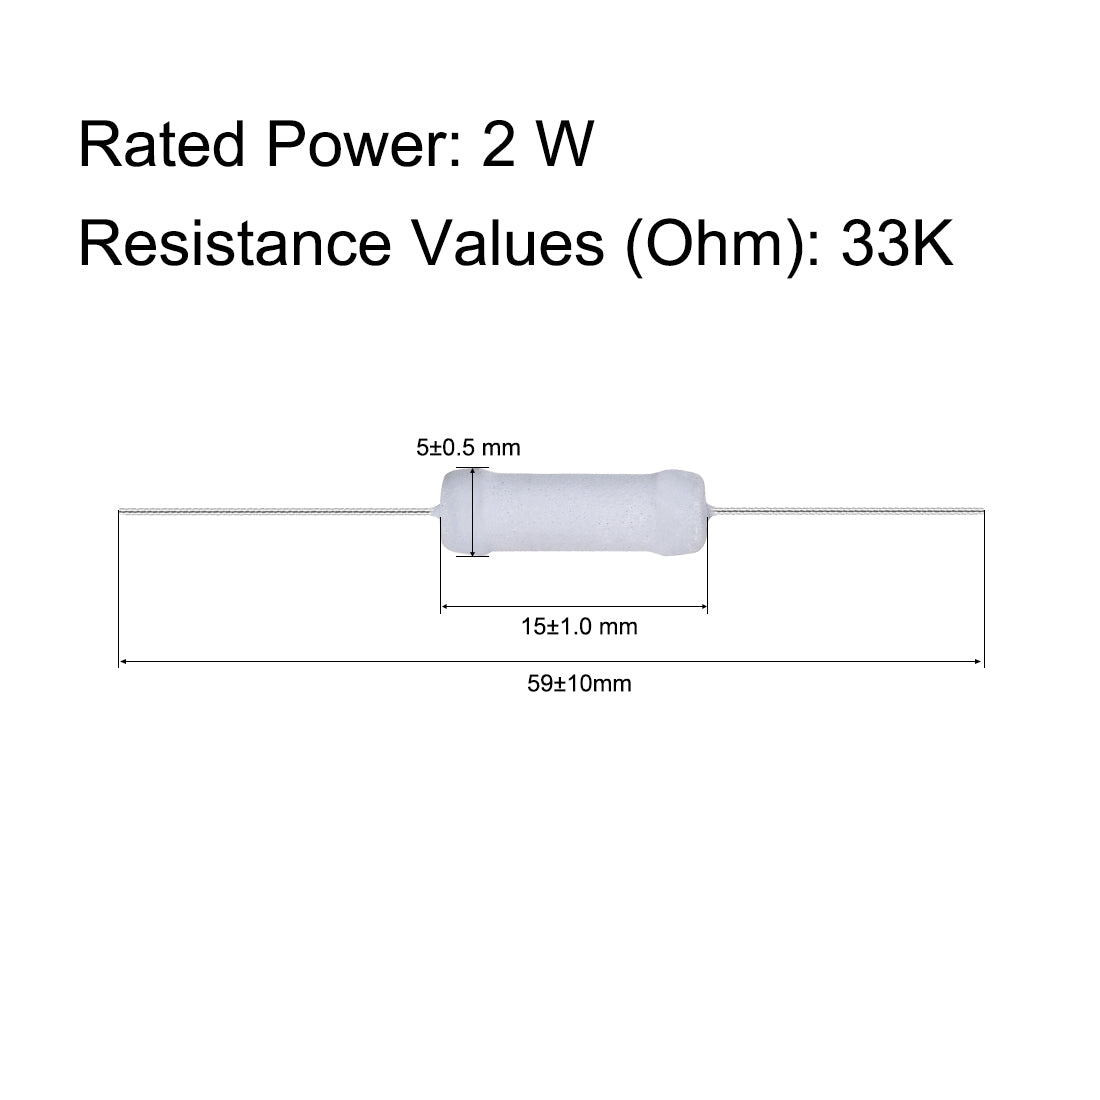 uxcell Uxcell 30pcs 2W 2 Watt Metal Oxide Film Resistor Axile Lead 33K Ohm ±5% Tolerance